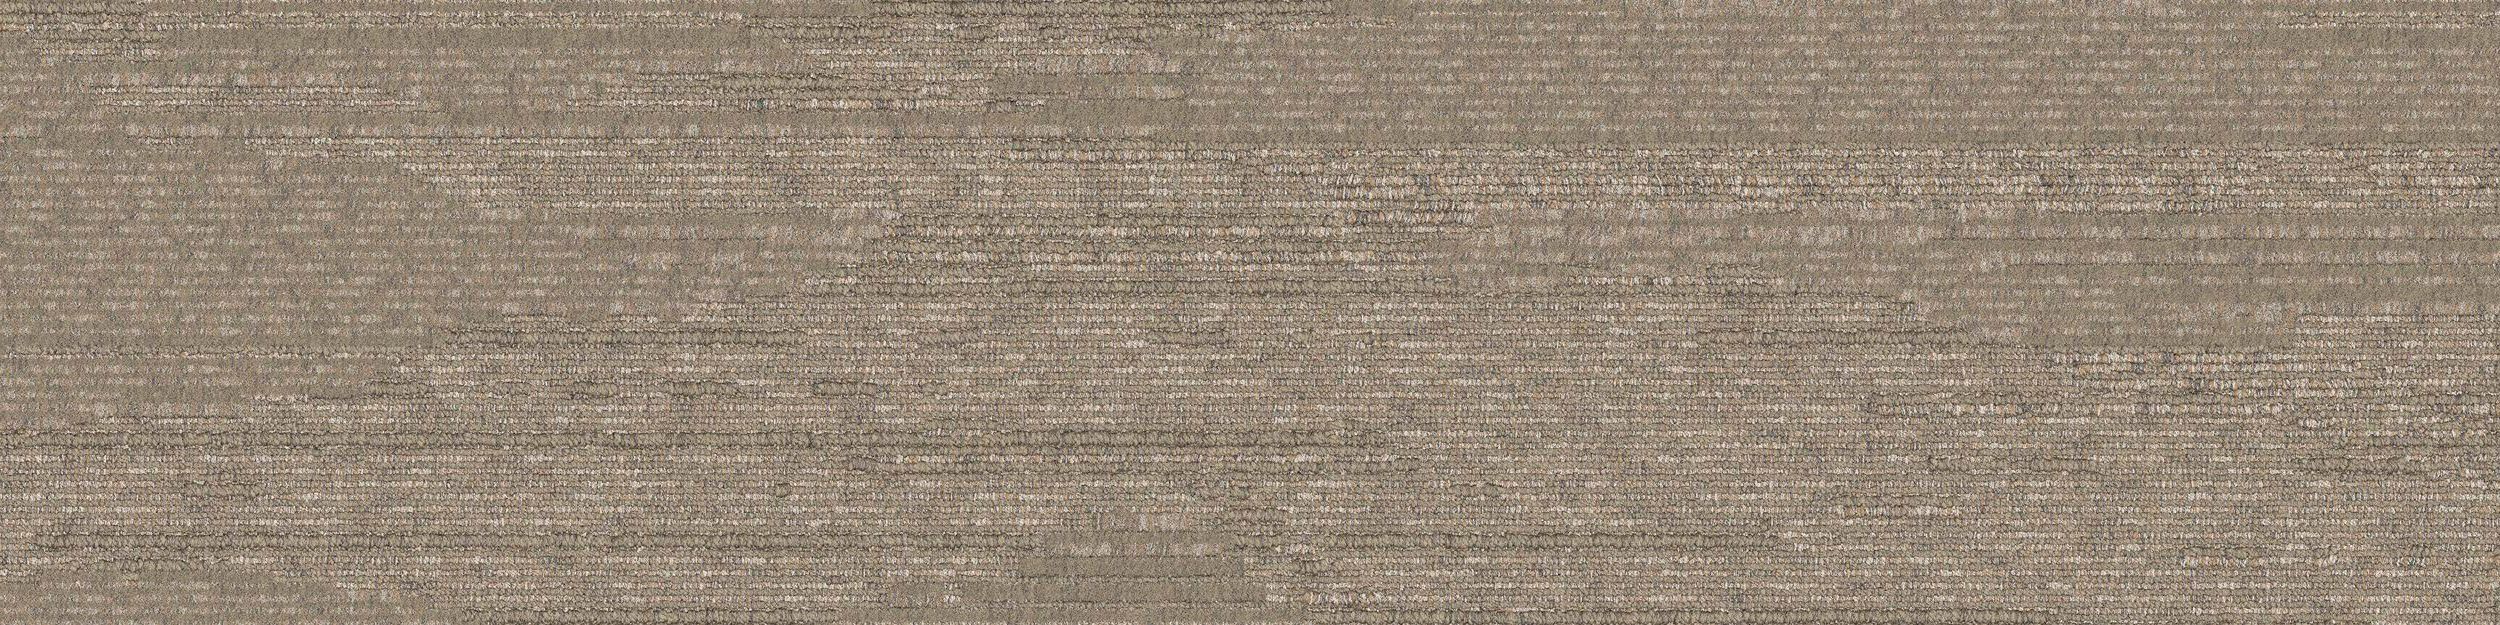 UR501 Carpet Tile In Flax Bildnummer 2